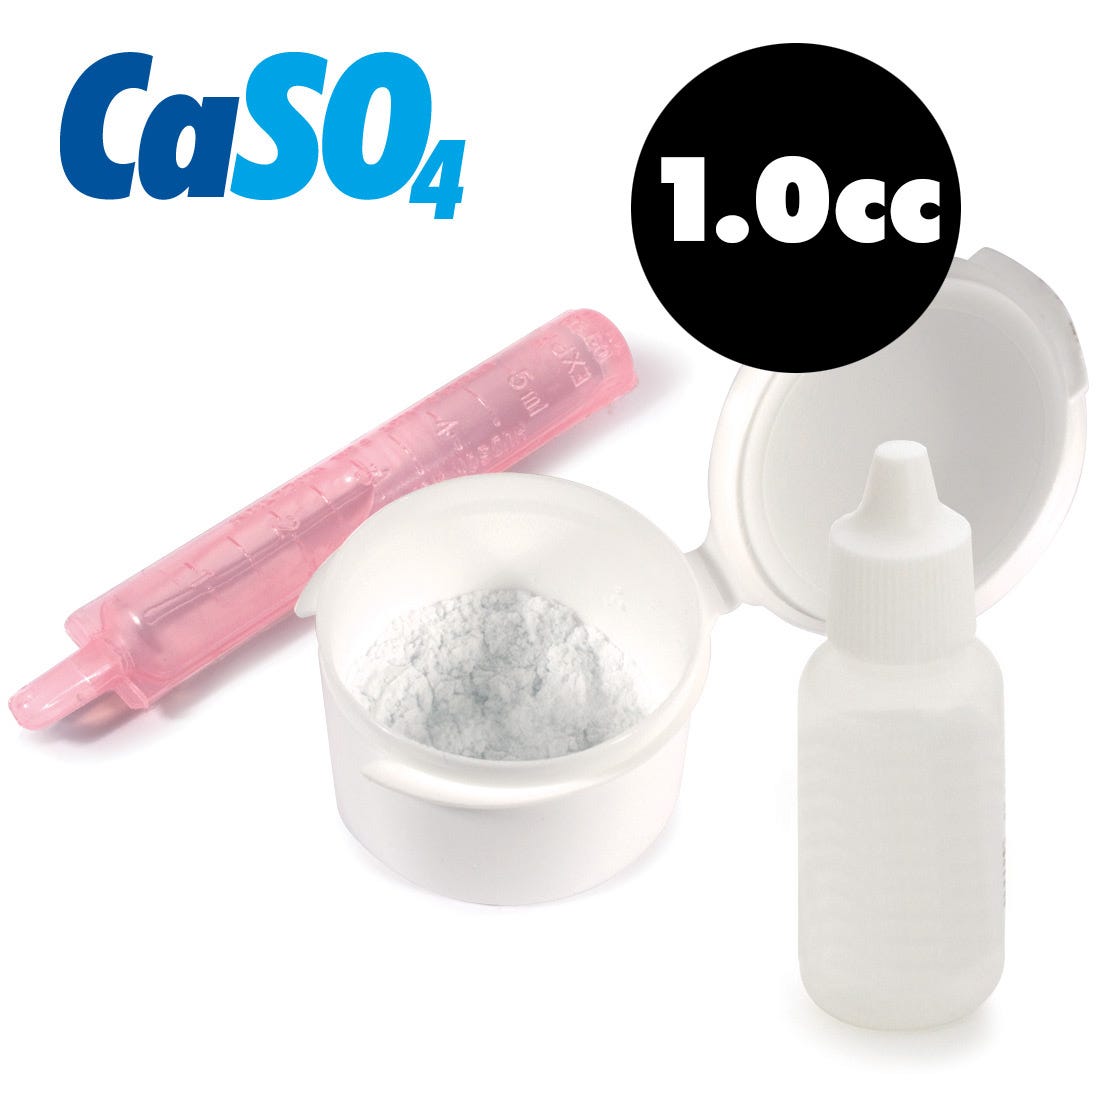 CaSO4 - Calcium Sulfate Medical Grade Surgical Plaster  1 Gram Kit